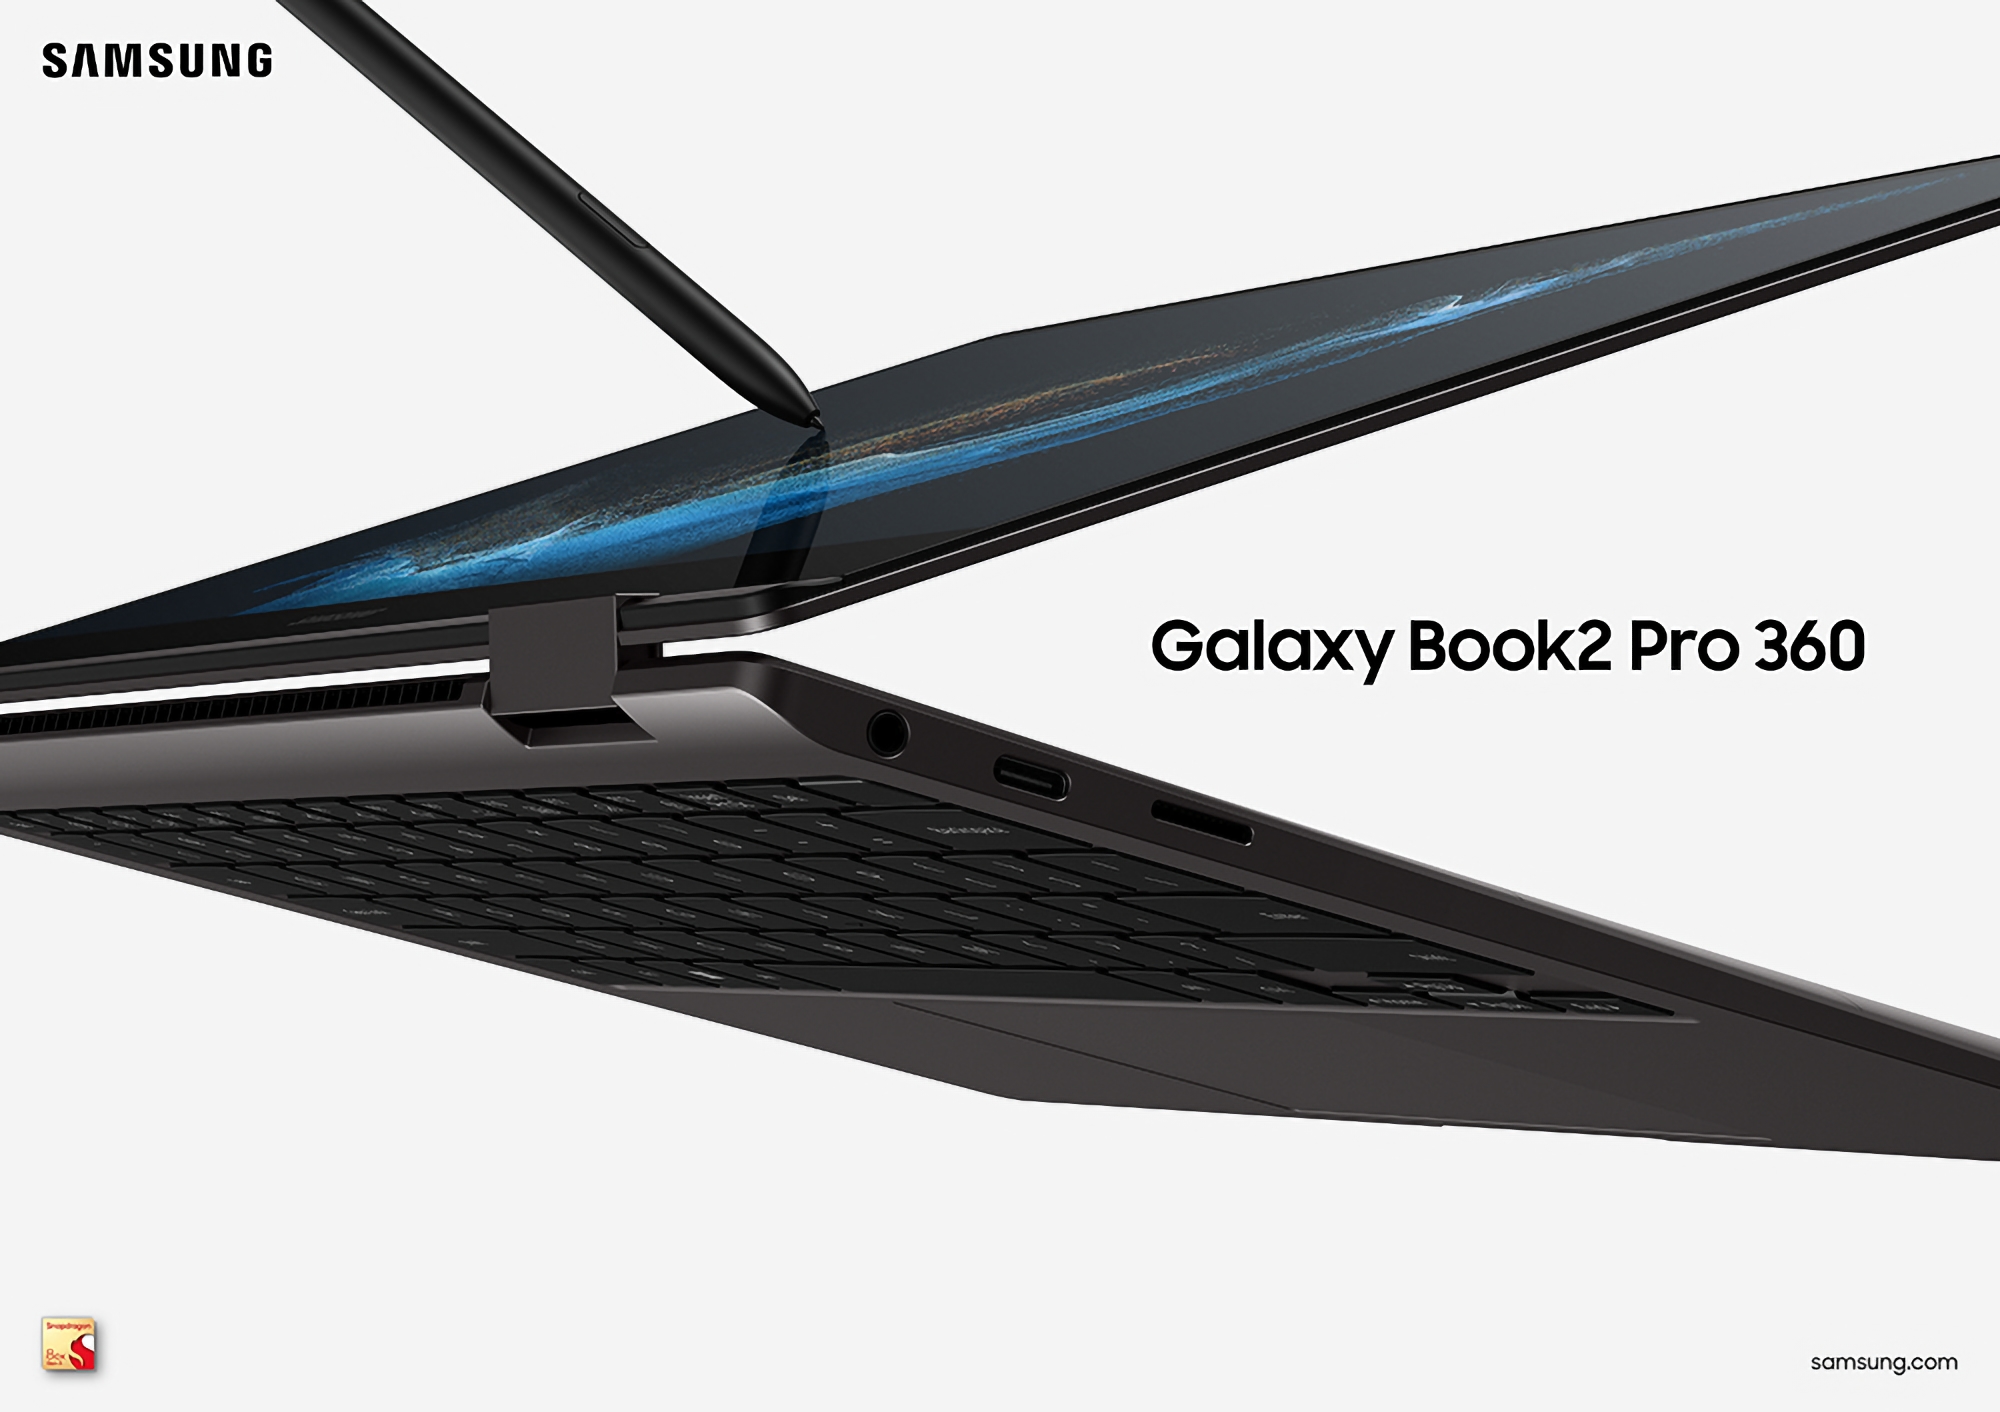 Samsung a annoncé une nouvelle version du Galaxy Book 2 Pro 360 avec une puce ARM Qualcomm Snapdragon 8cx Gen 3